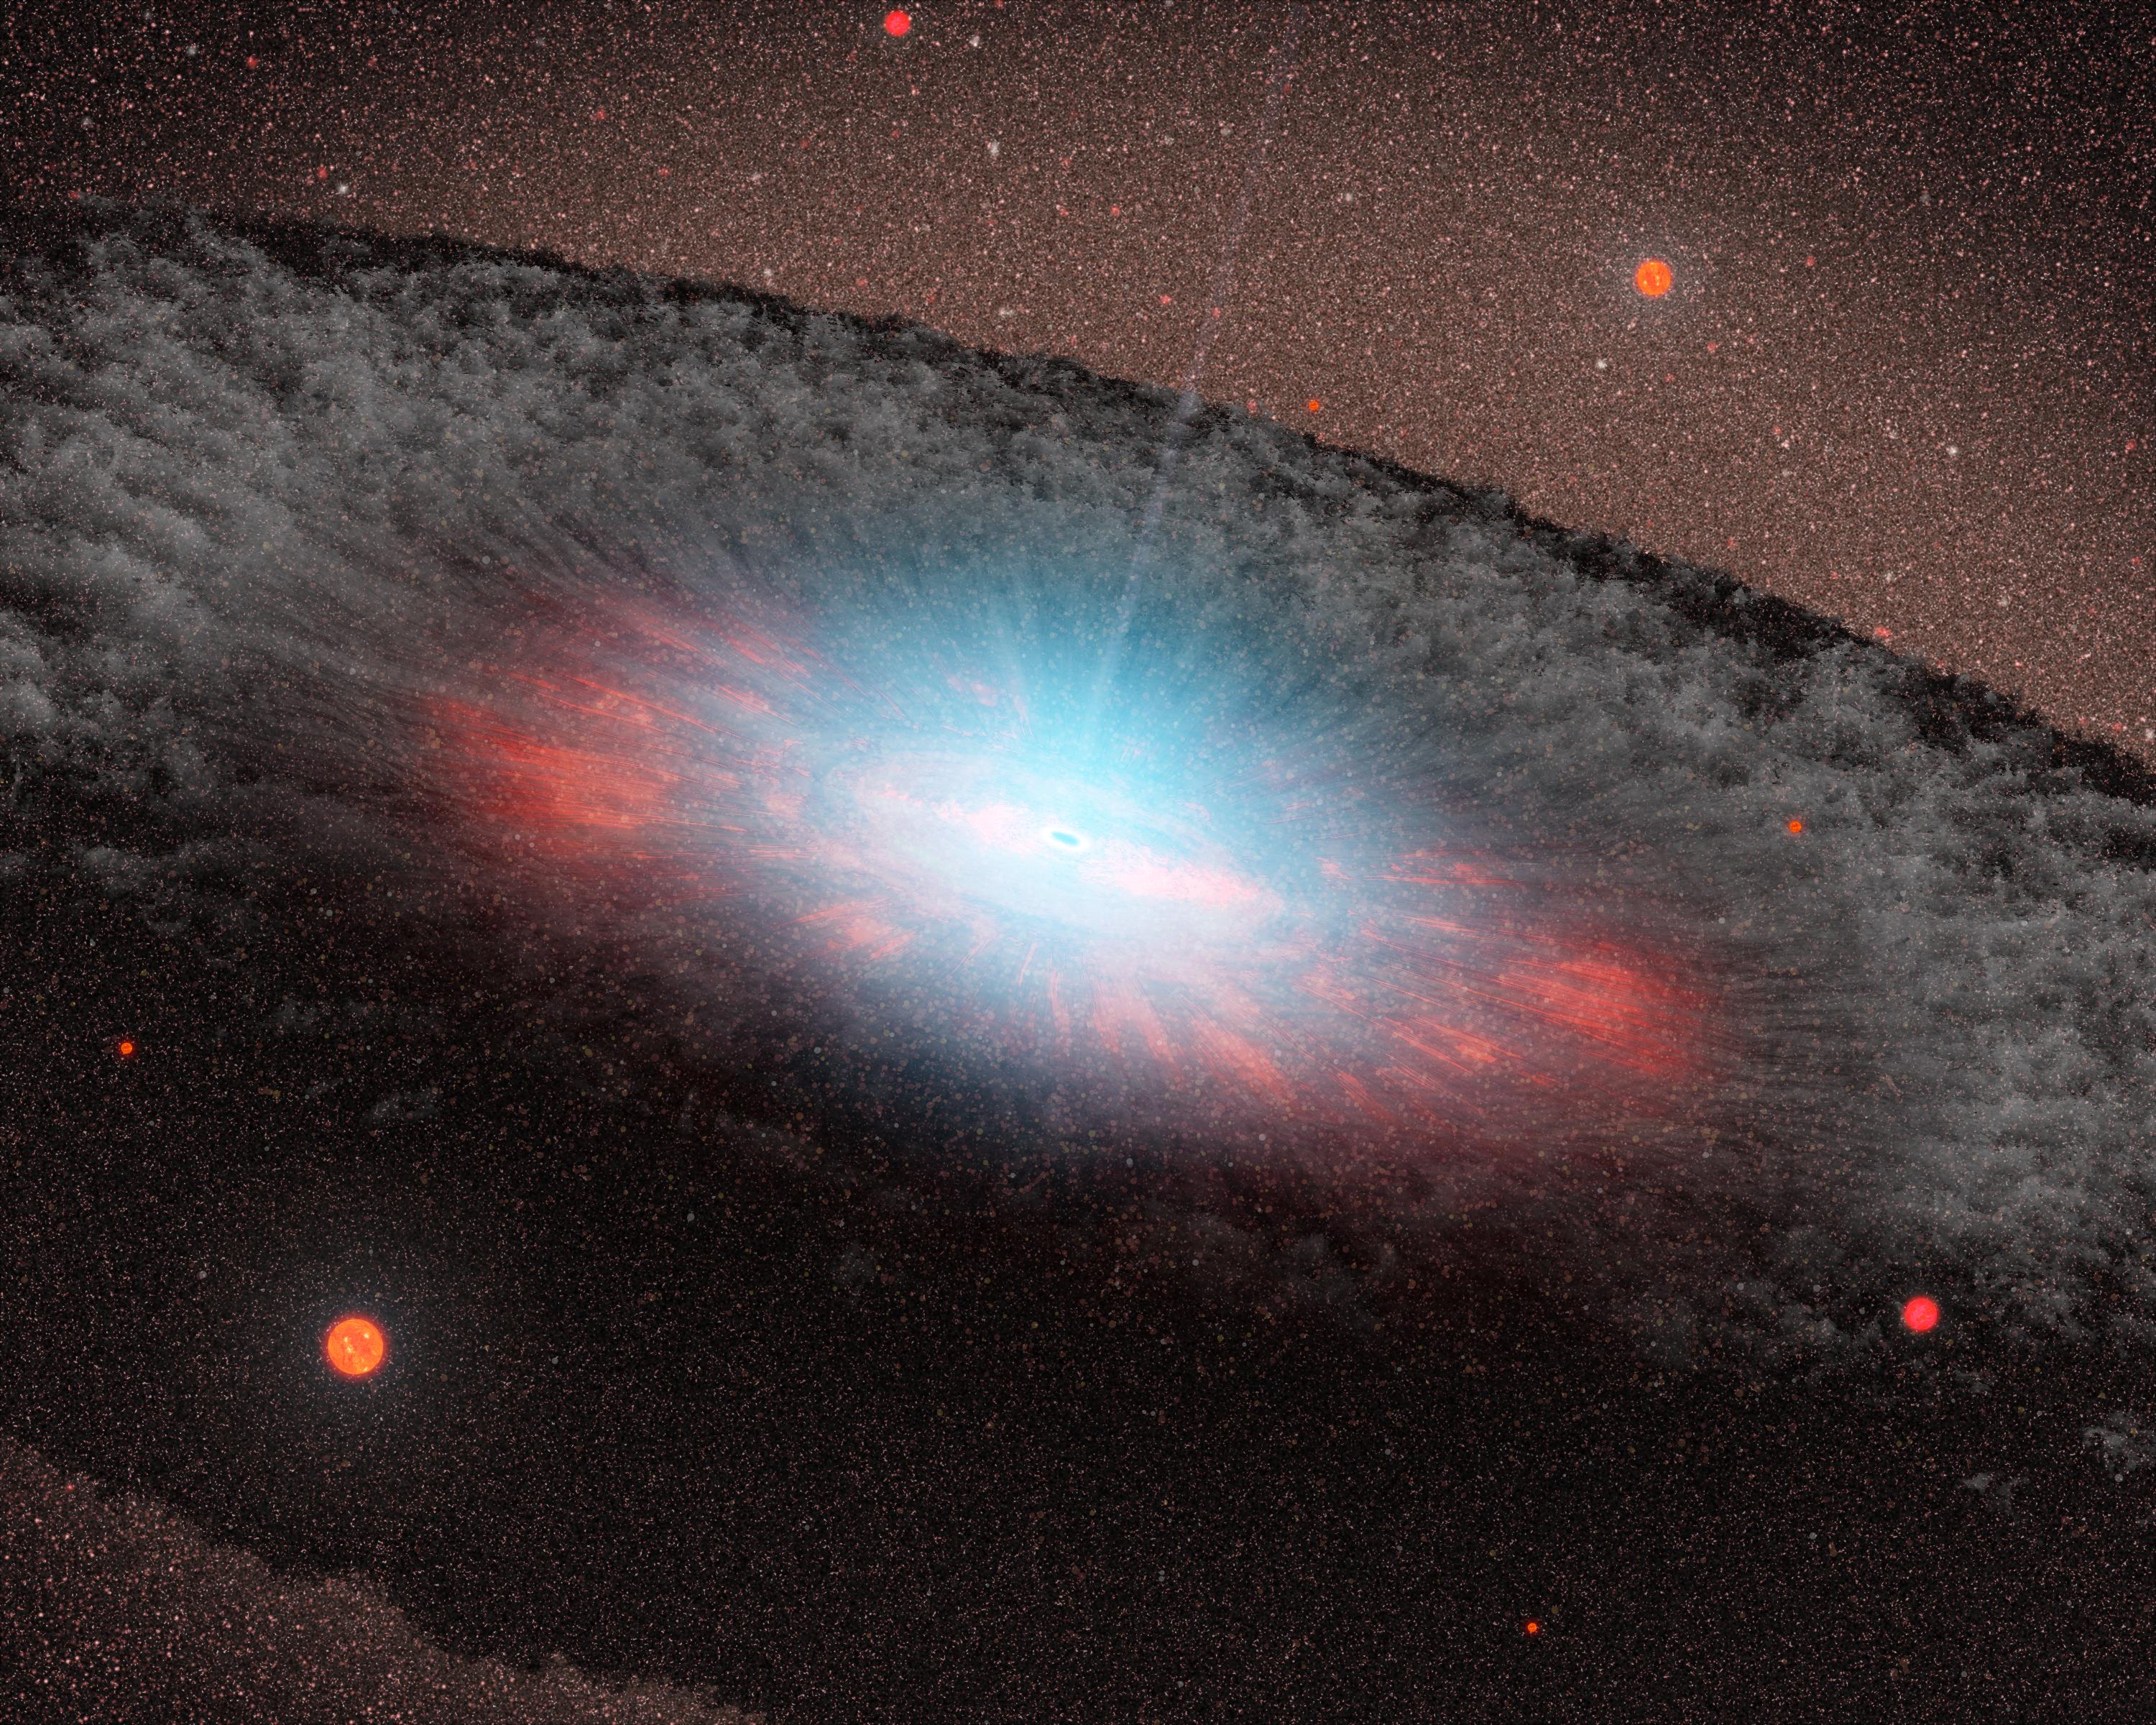 Representación artística de un agujero negro supermasivo en el centro de una galaxia. Imagen: NASA/JPL-Caltech